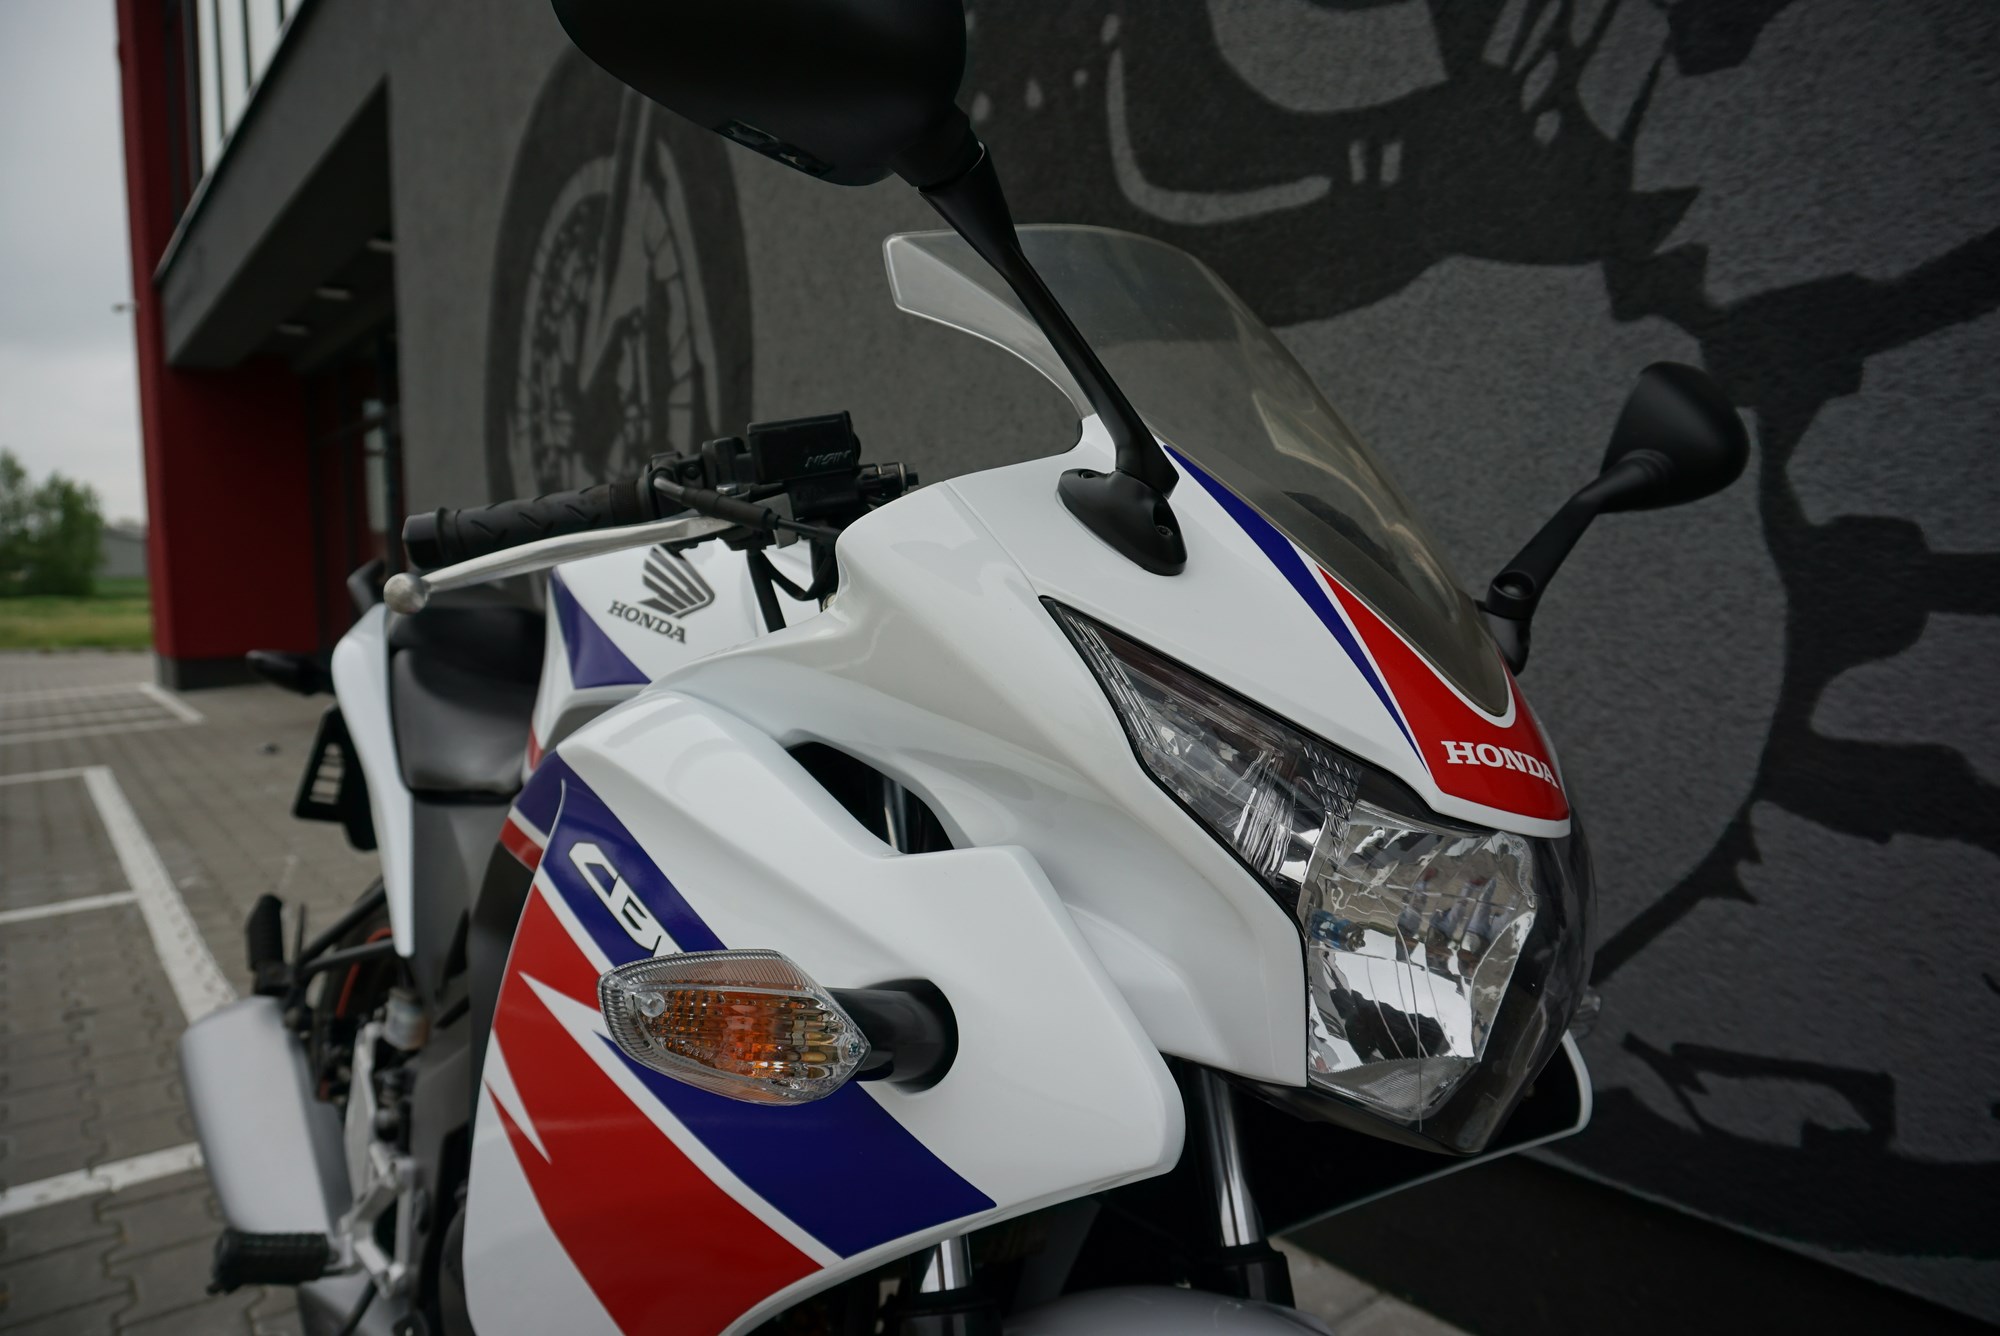 Honda CBR 125 R